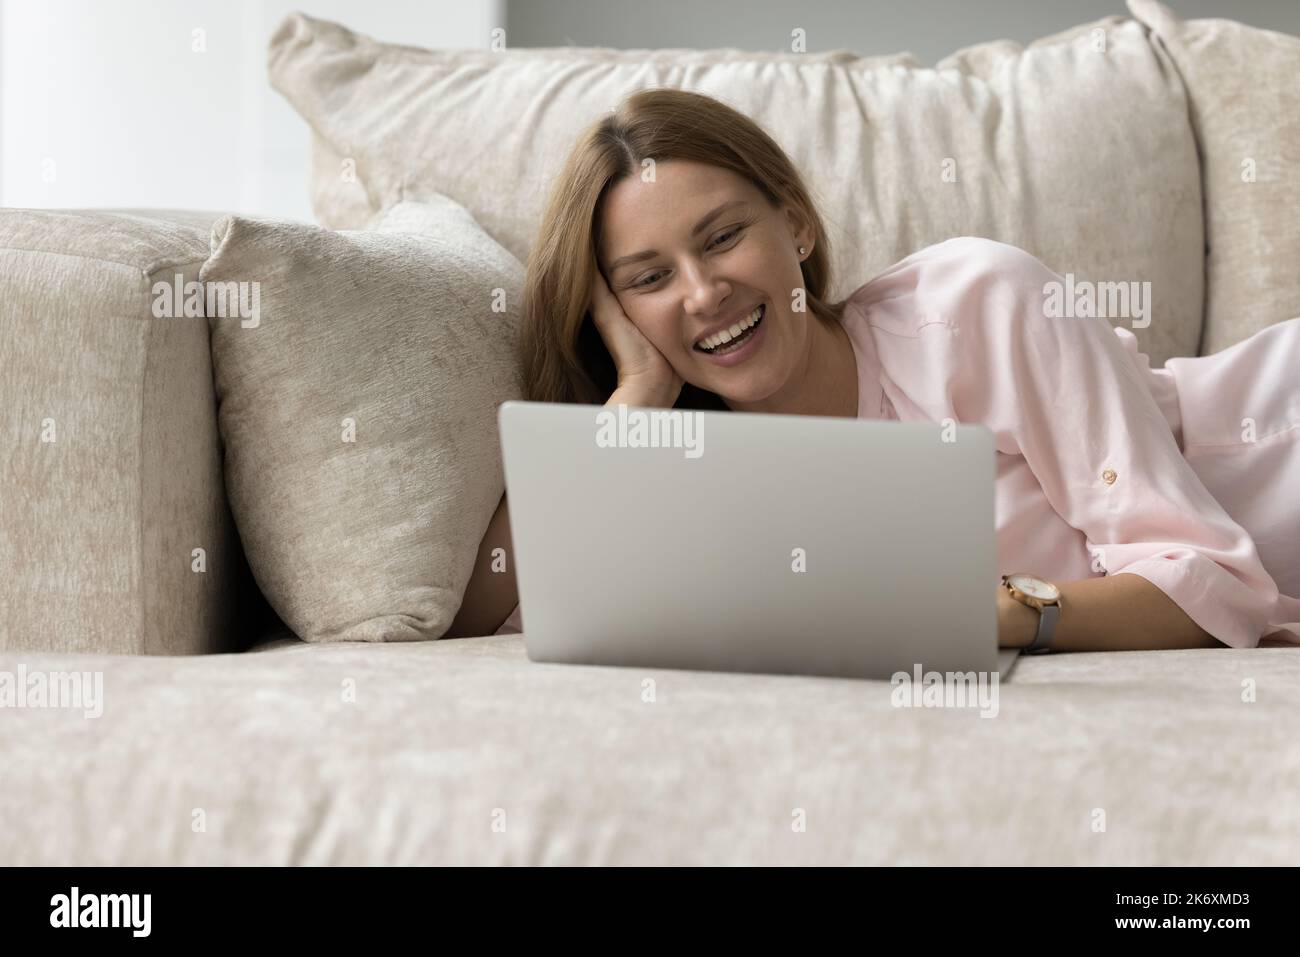 Une femme heureuse aime l'utilisation d'Internet sur un canapé avec ordinateur portable Banque D'Images